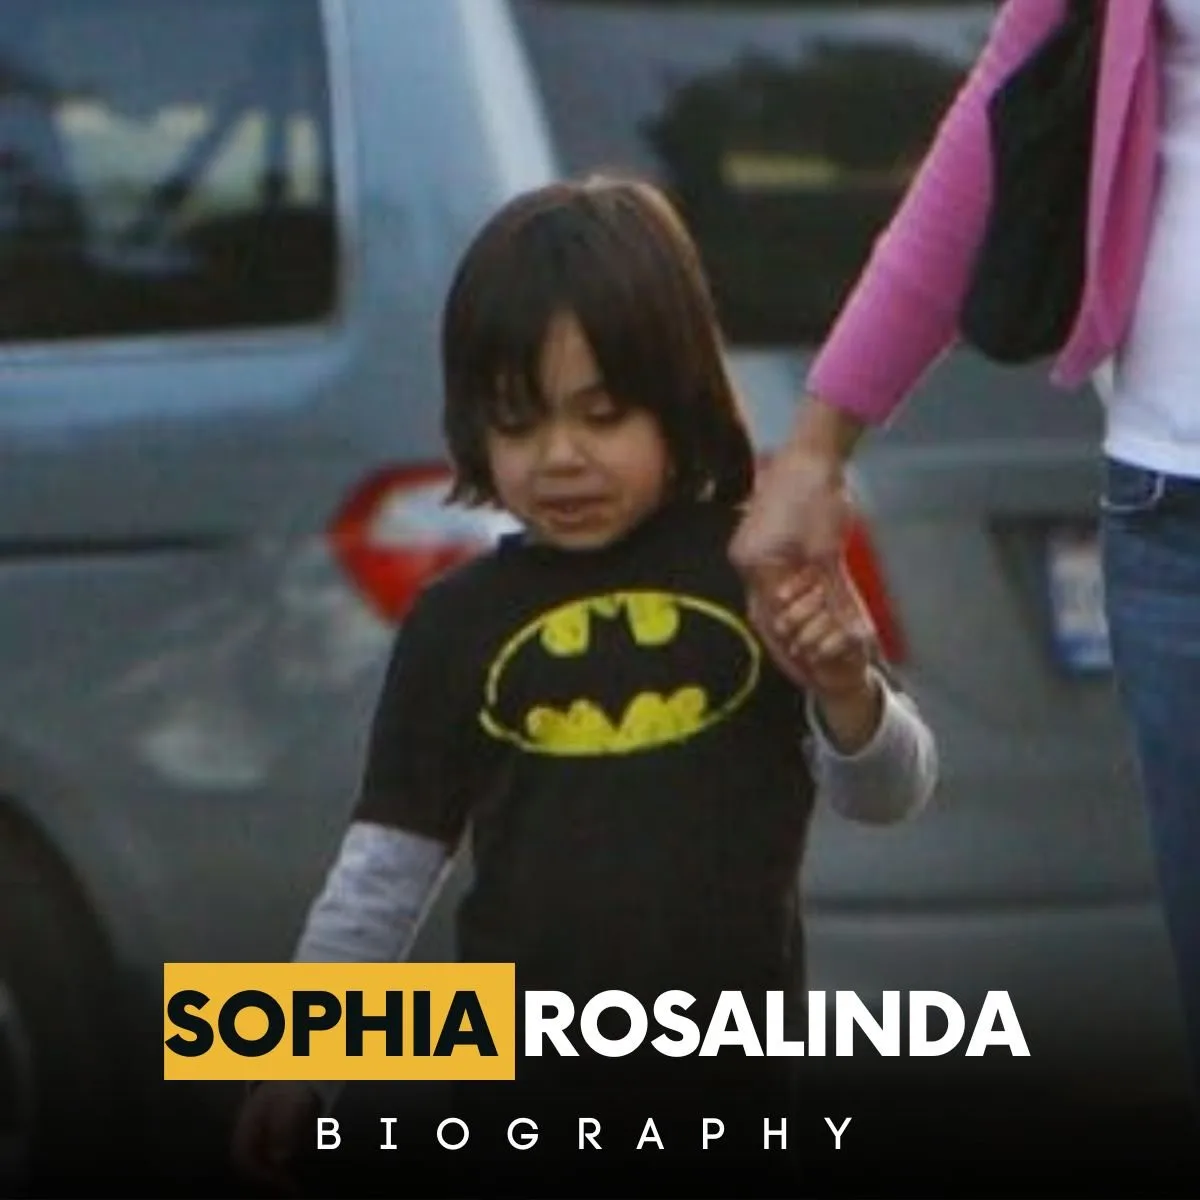 Sophia Rosalinda Biography